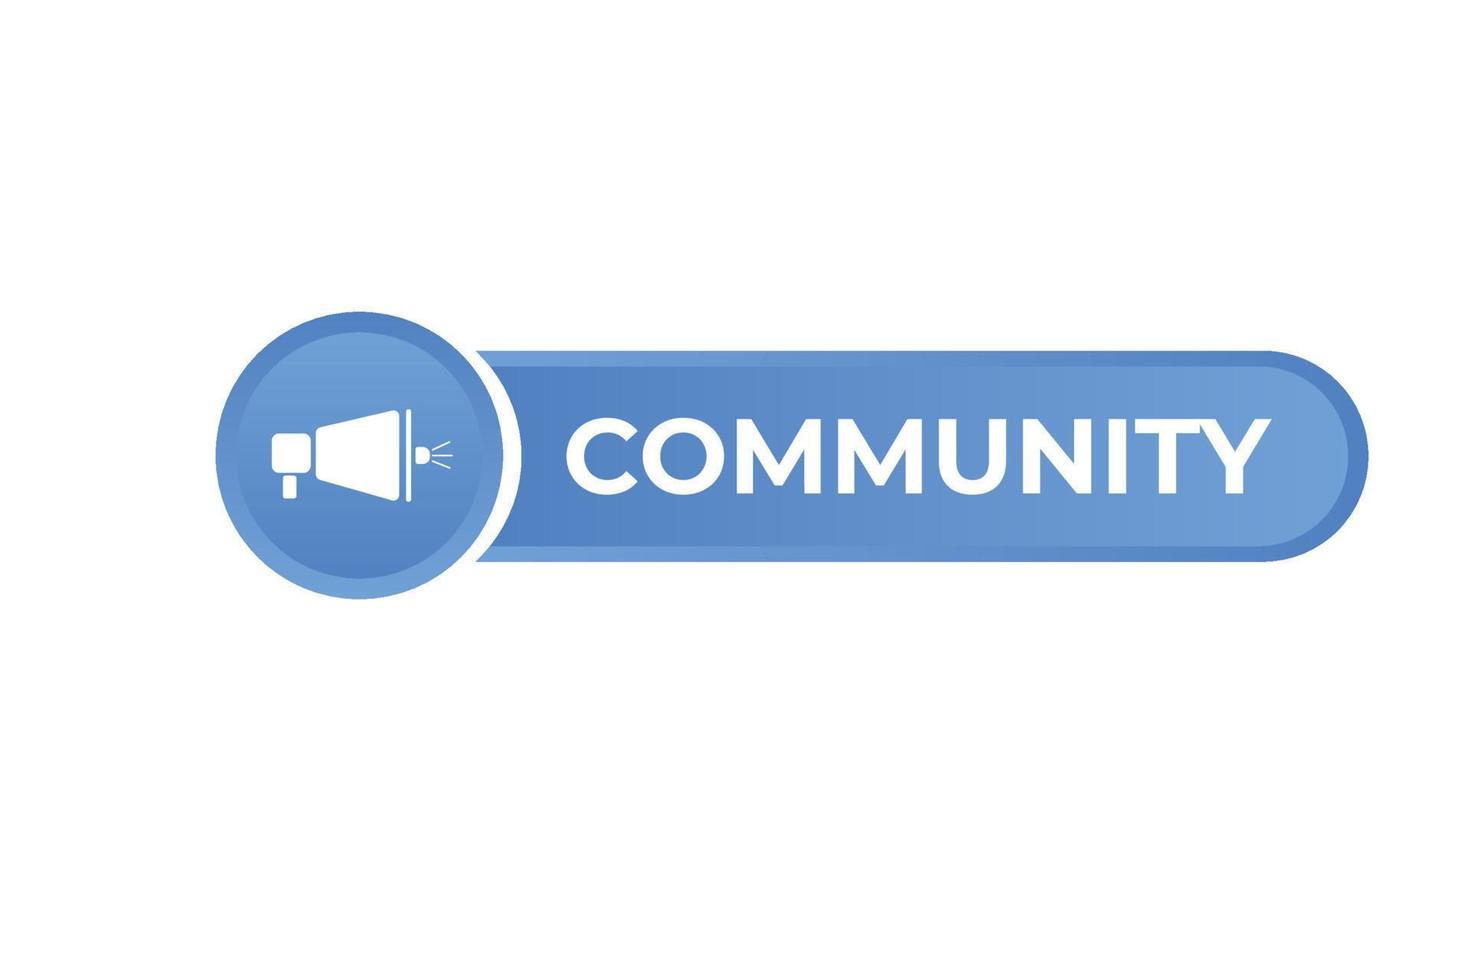 communauté bouton. discours bulle, bannière étiquette communauté vecteur